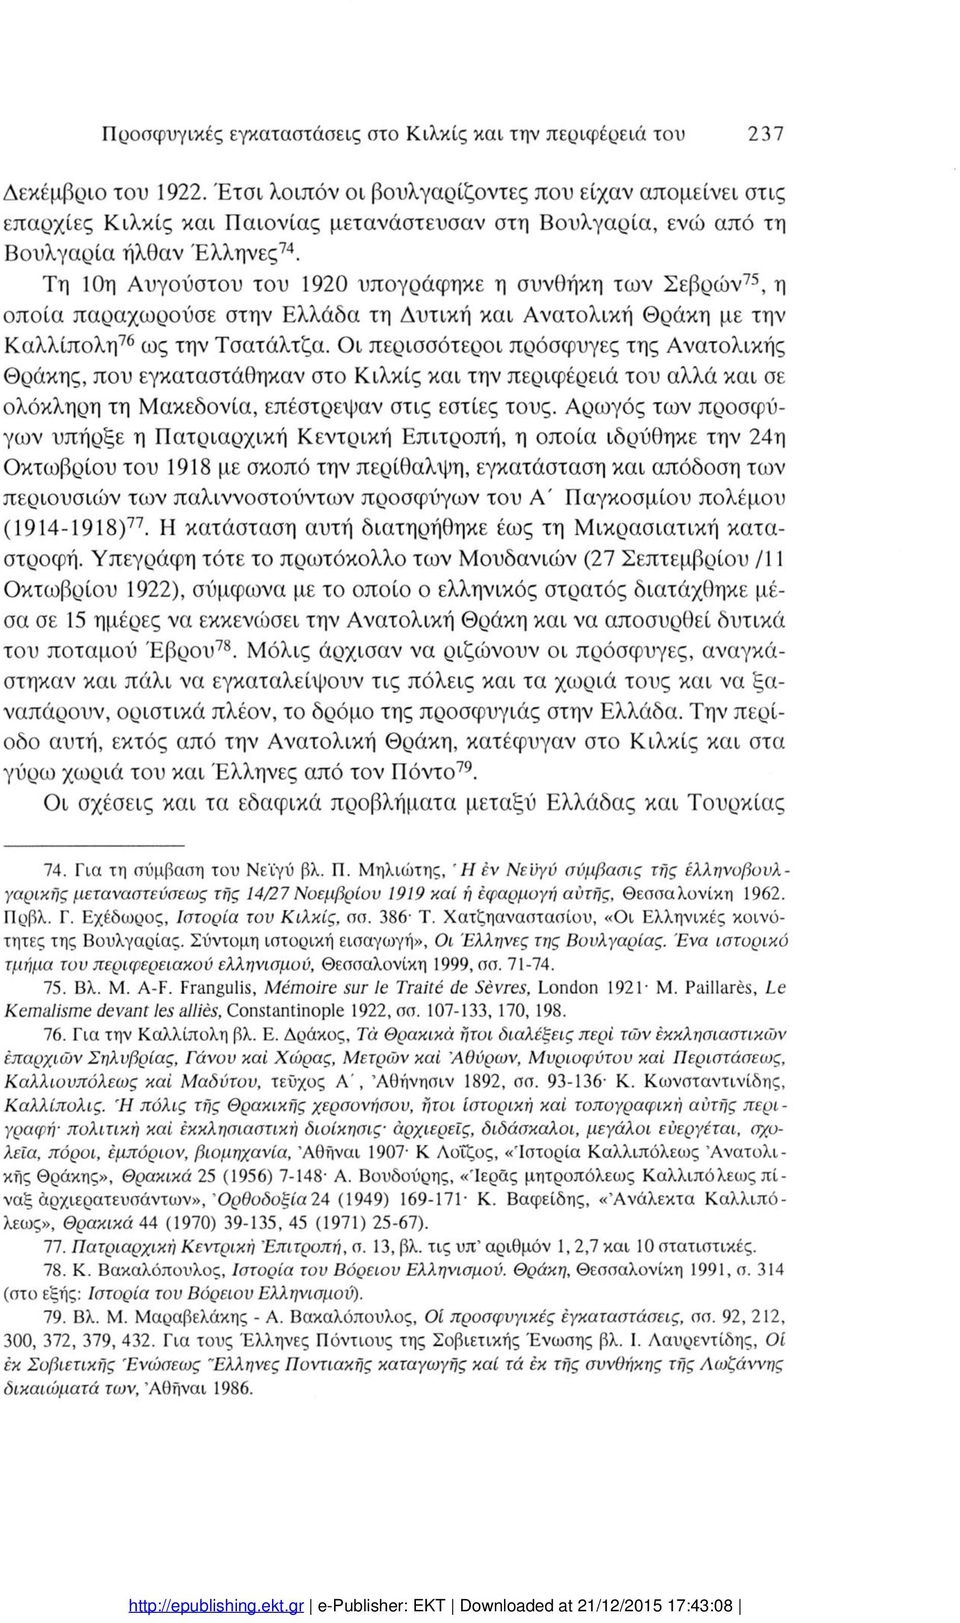 Τη 0η Αυγΰστυ τυ 920 υπγράφηκε η συνθήκη των Σεβρών75, η πία παραχωρύσε στην Ελλάδα τη Δυτική και Ανατλική Θράκη με την Καλλίπλη76 ως την Τσατάλτζα.